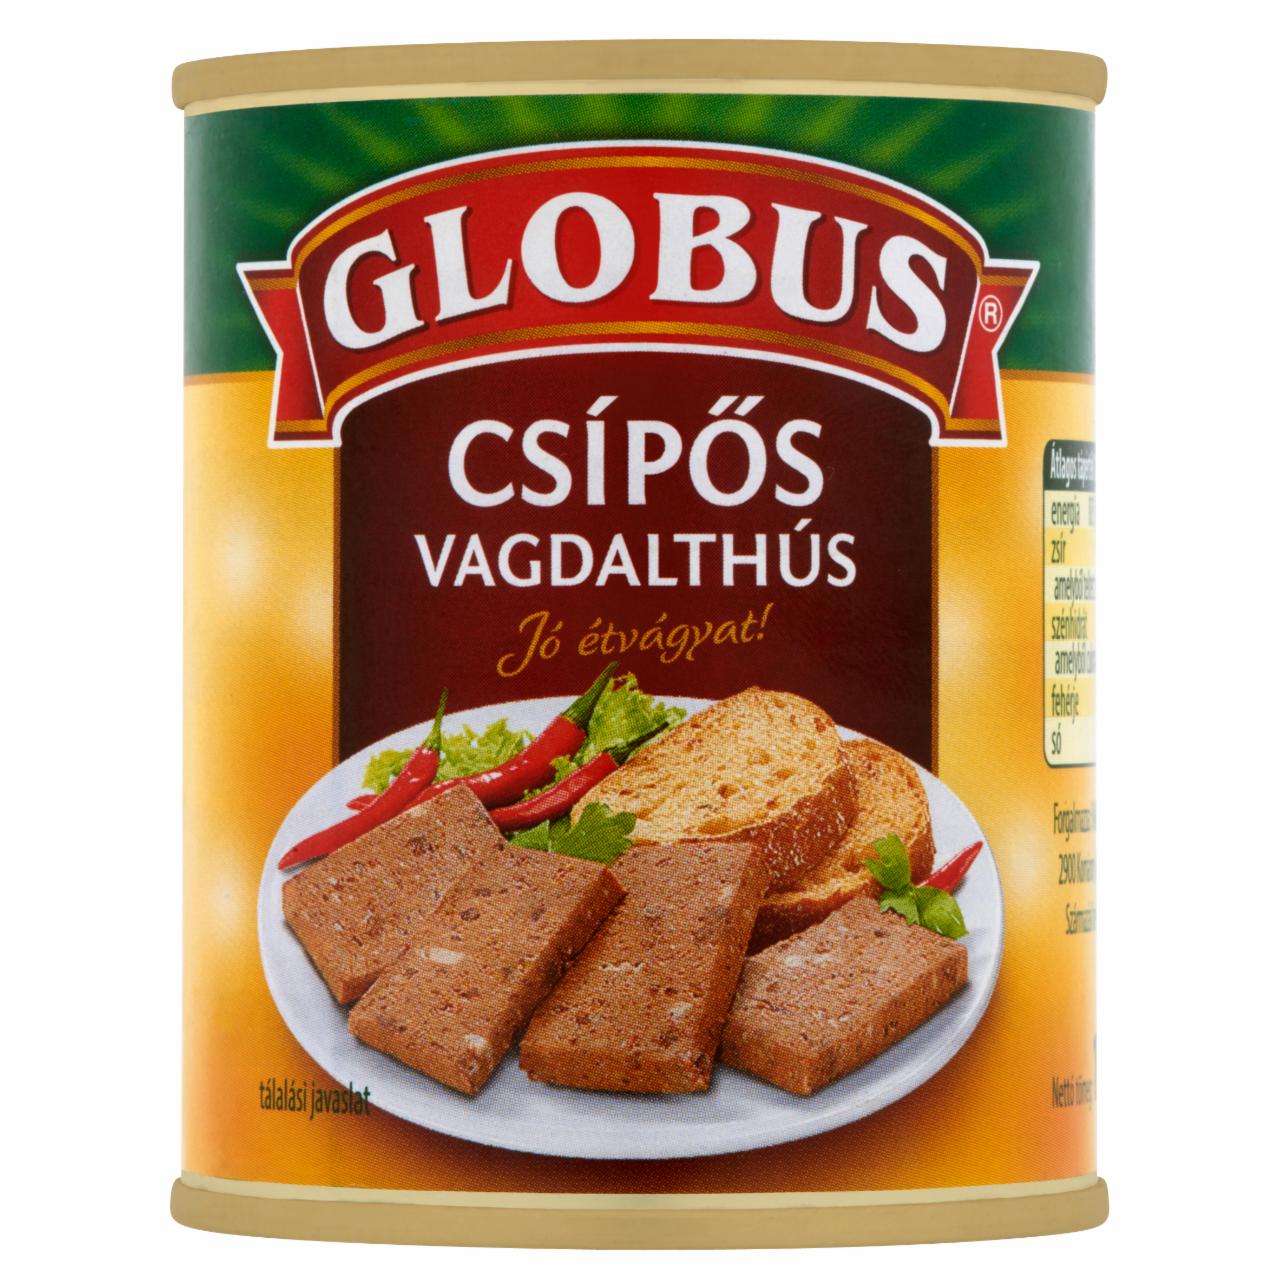 Képek - Globus csípős vagdalthús 130 g